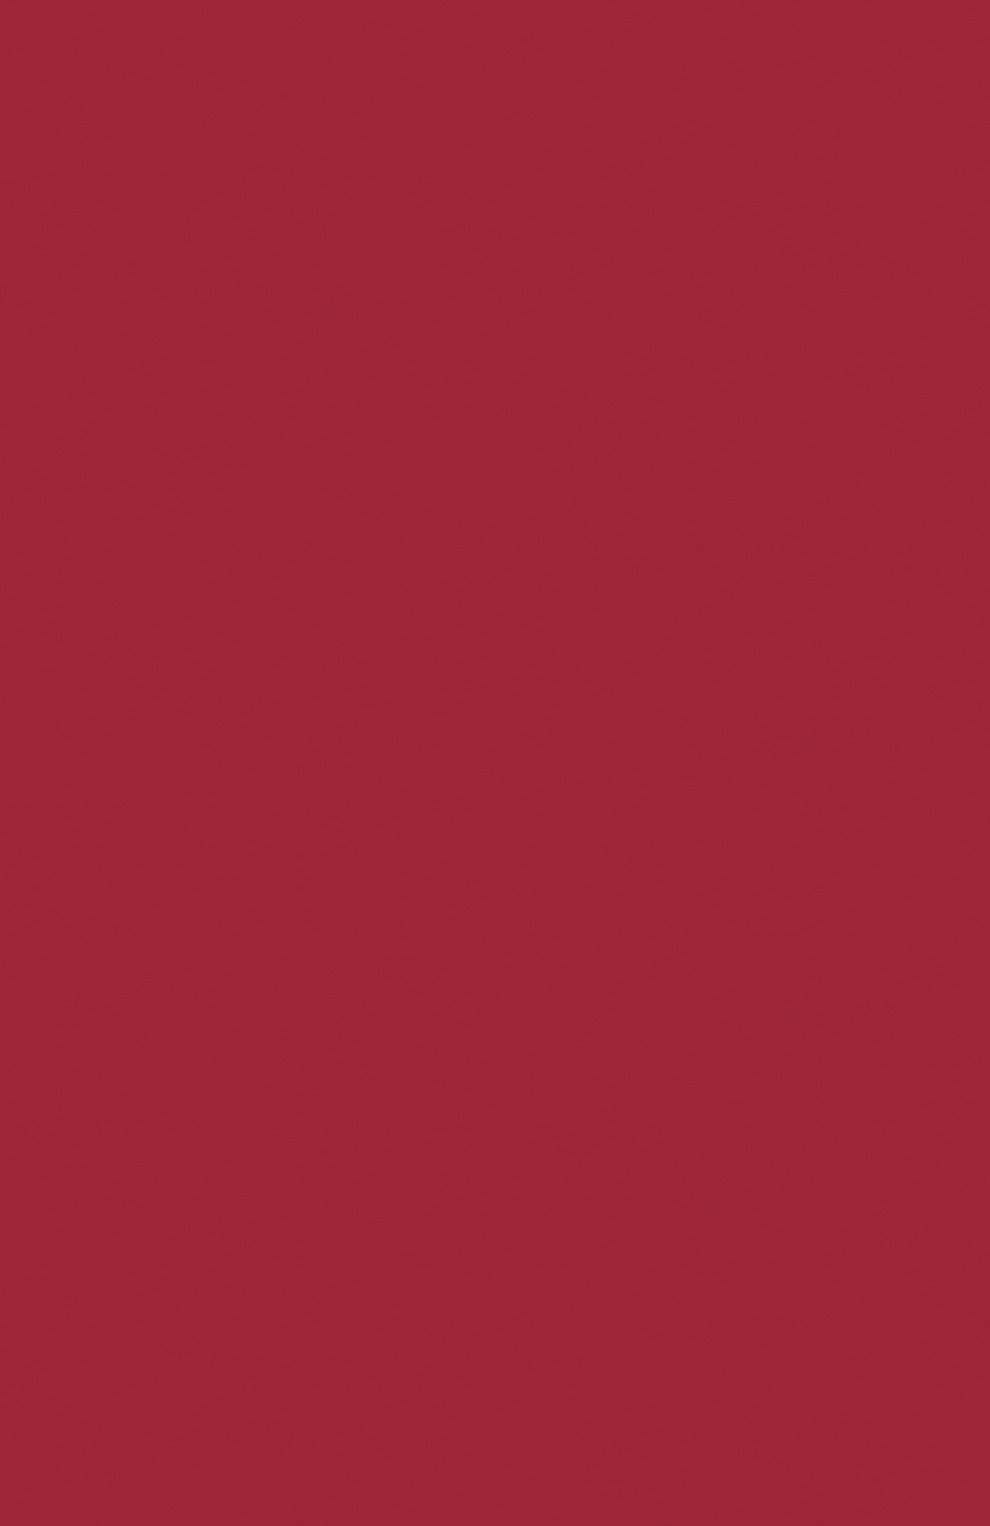 Жидкая матовая помада intoxicating rouge (3ml) KILIAN  цвета, арт. 3700550221913 | Фото 3 (Обьем косметики: 100ml; Финишное пок�рытие: Матовый)